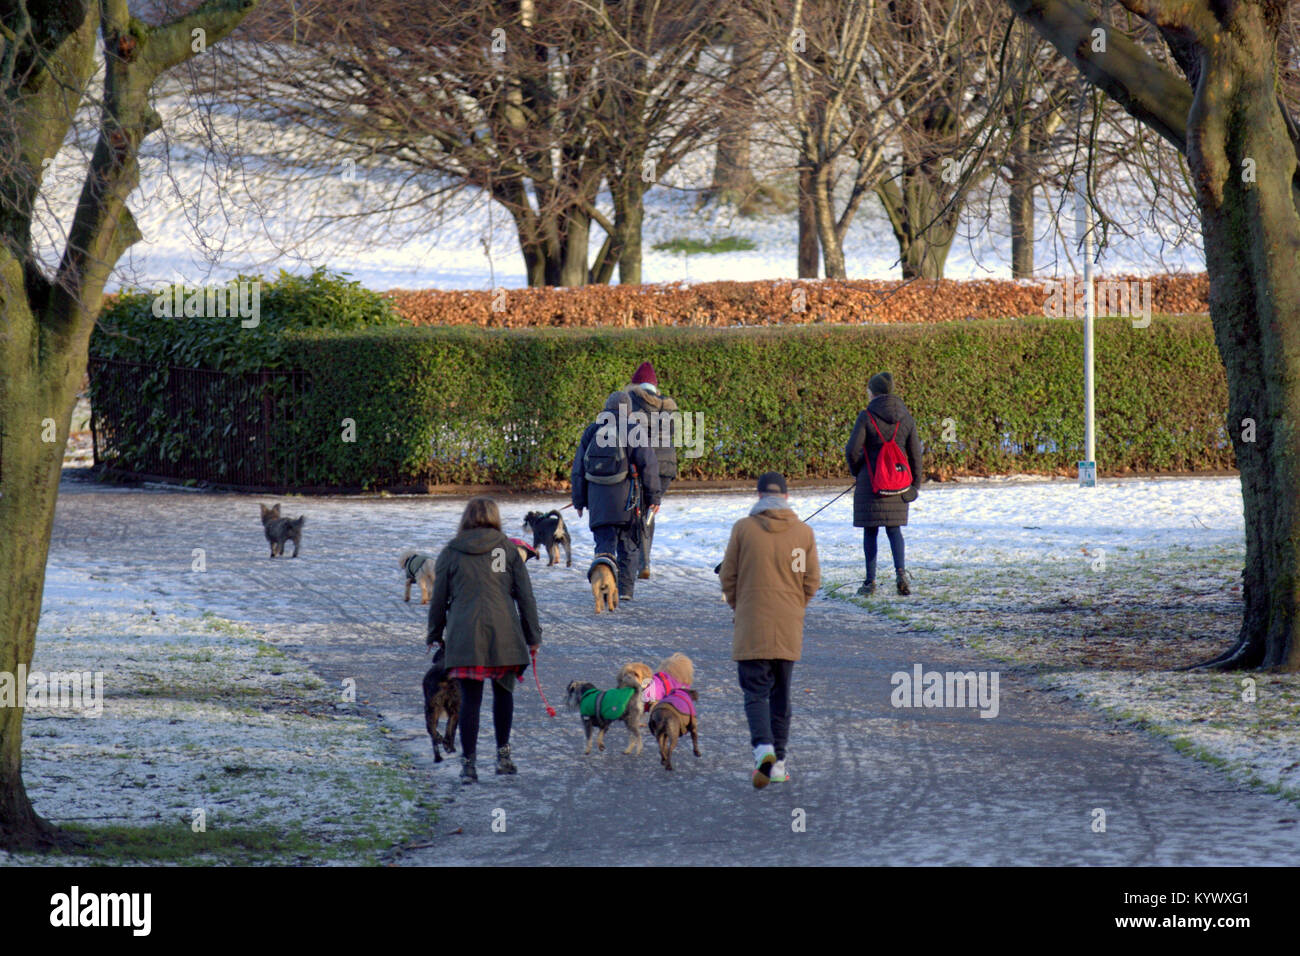 Glasgow, Scotland, UK 17 janvier. Fionn tempête de neige en Glasgow fait place à la lumière du soleil et un clair comme les gens à retourner au travail dans le parc de Kelvingrove, Glasgow, Royaume-Uni. Gérard Ferry/Alamy news Banque D'Images